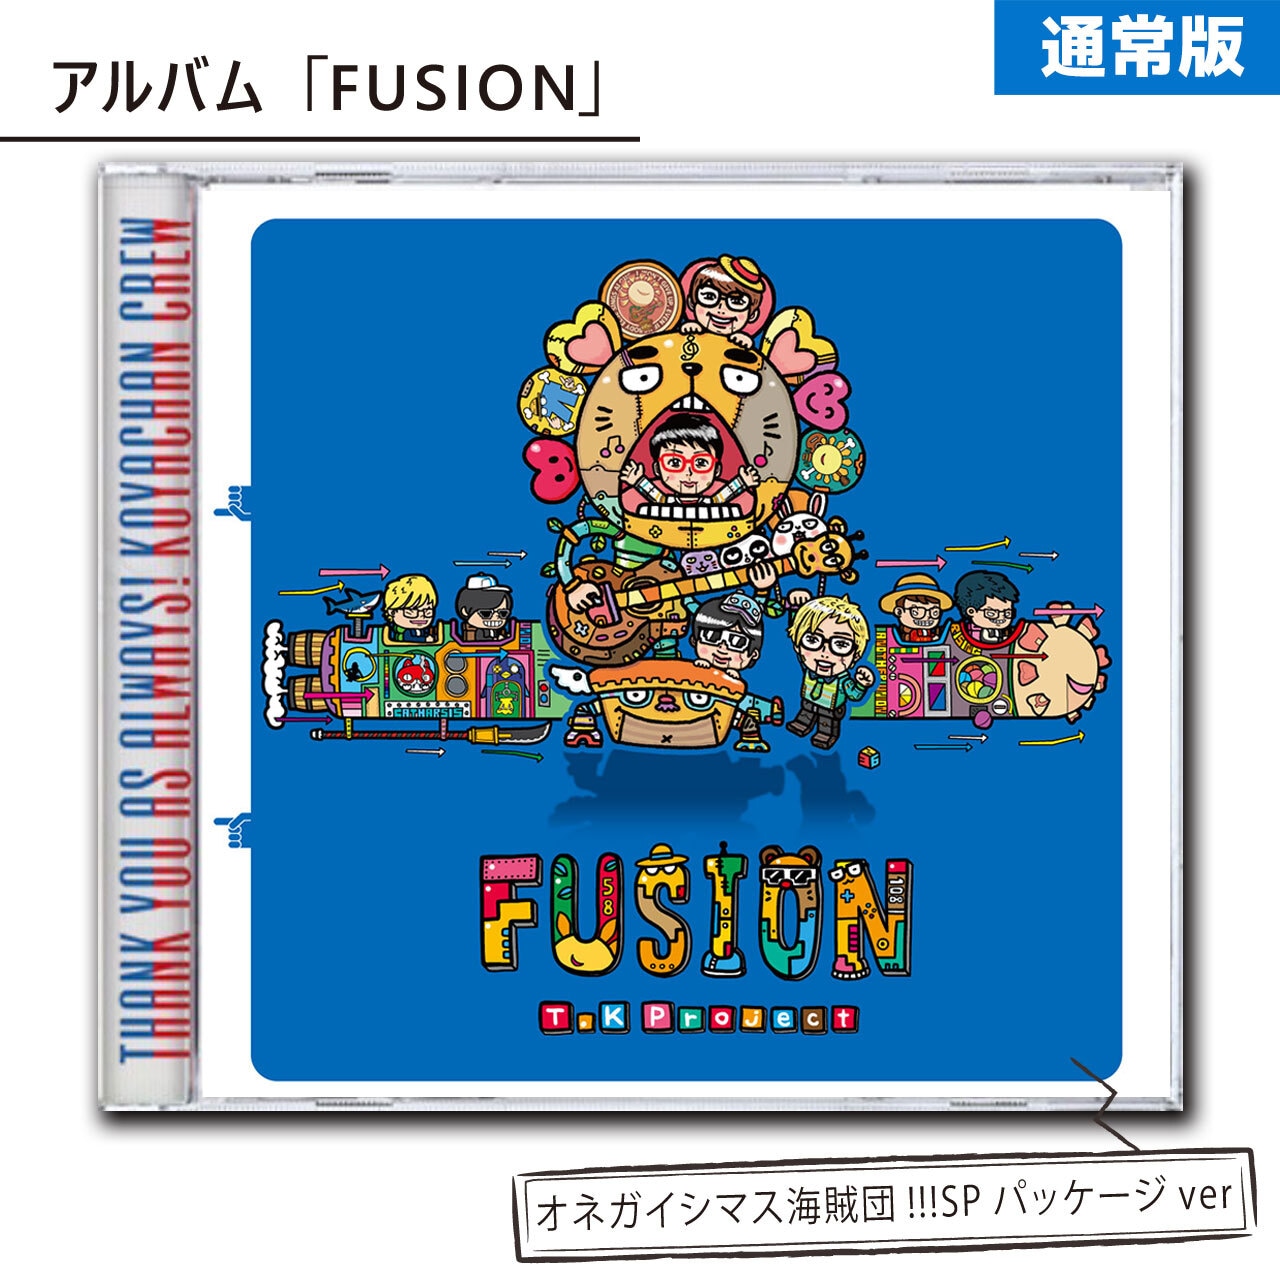 【通常版】アルバム「FUSION｣（オネガイシマス海賊団!!!SPパッケージver）